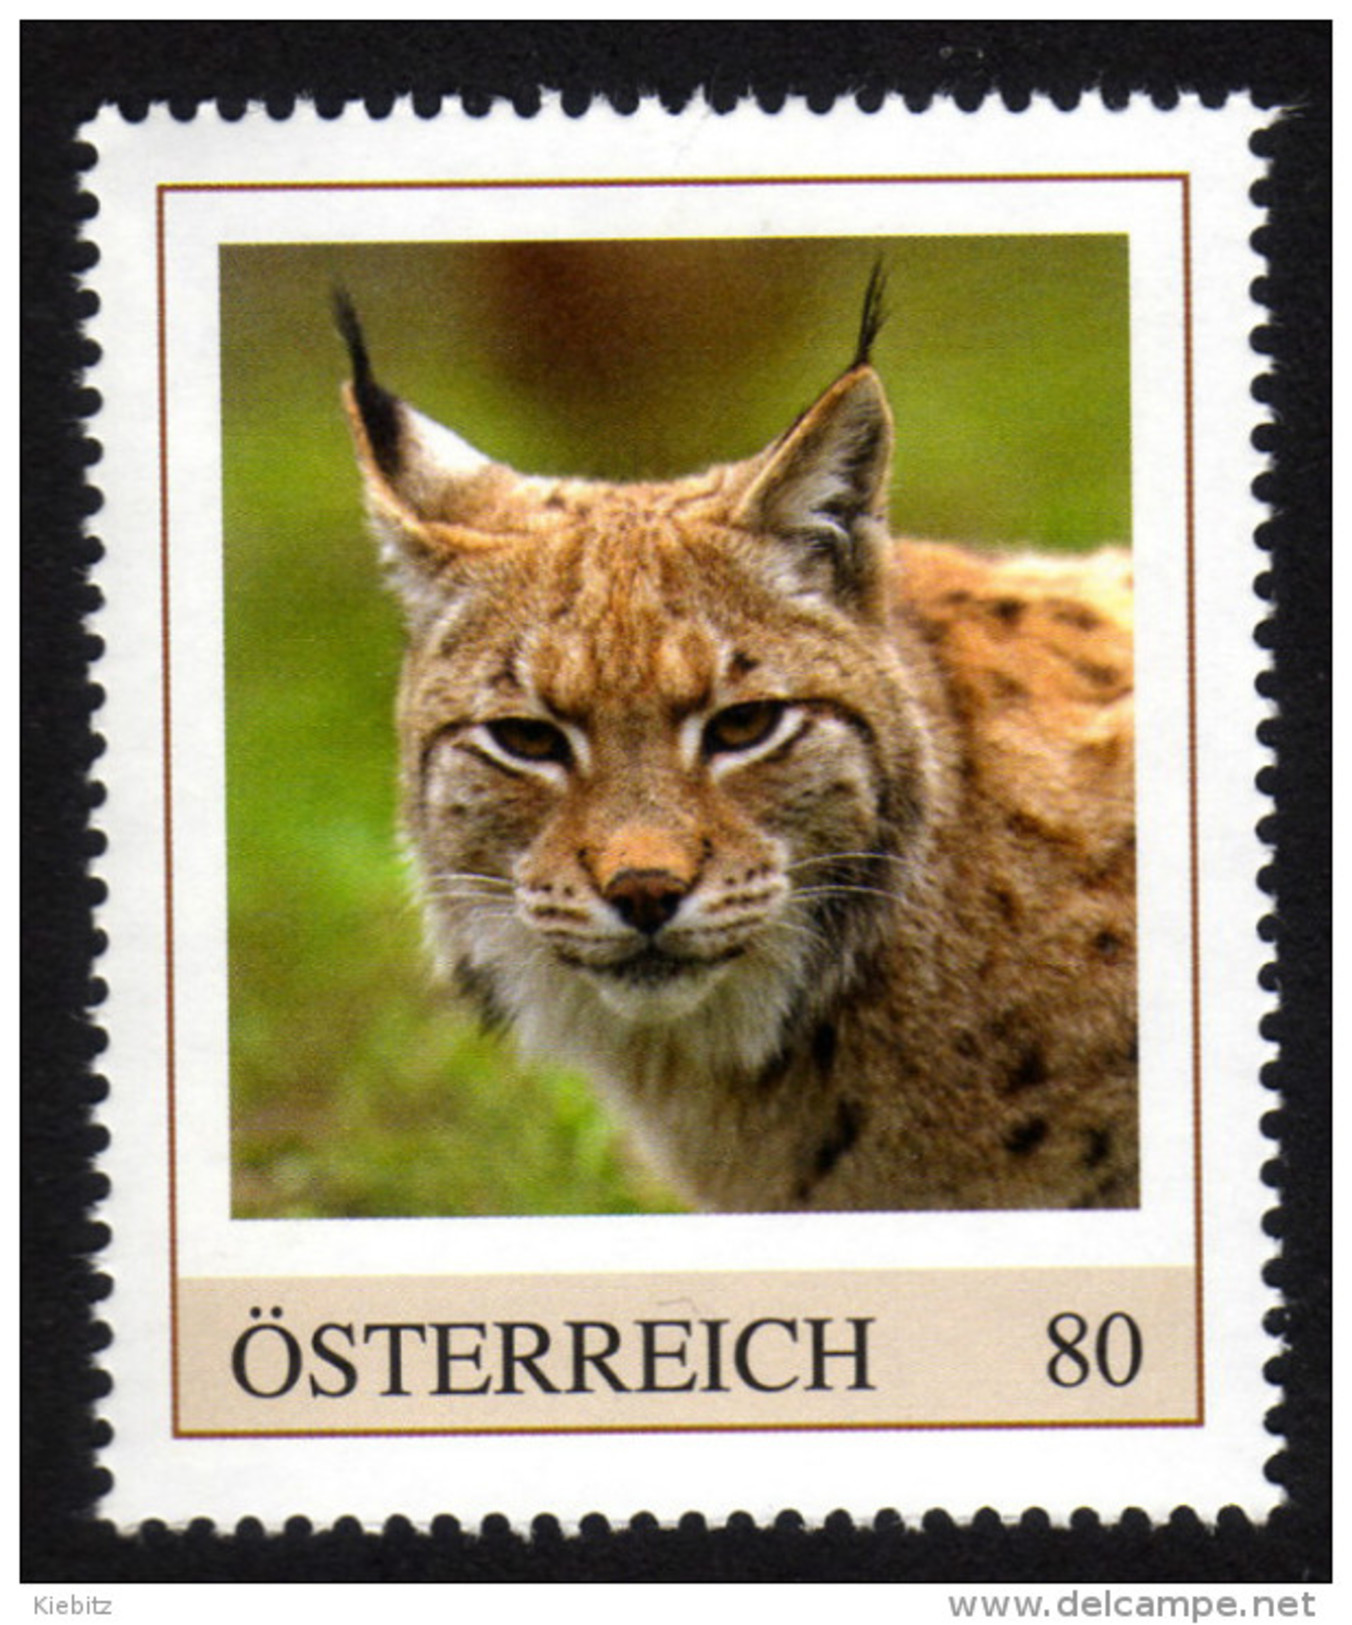 ÖSTERREICH 2016 ** Eurasischer LUCHS / Lynx Lynx - PM Personalized Stamps MNH - Raubkatzen